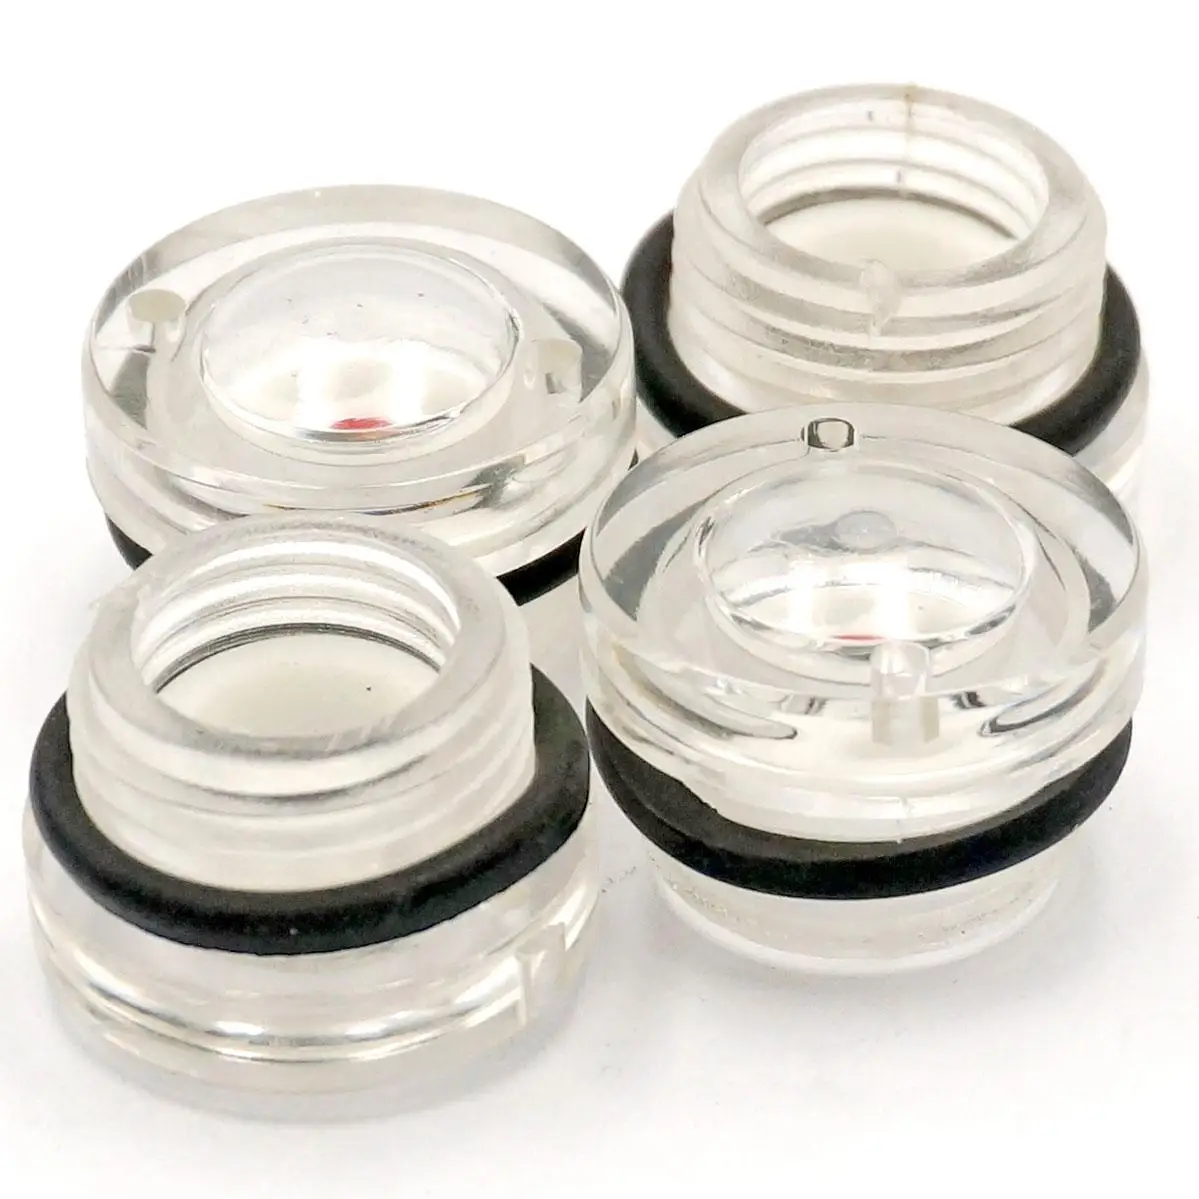 Hydraulic accessories sight glass plastic m27 x 1,5 